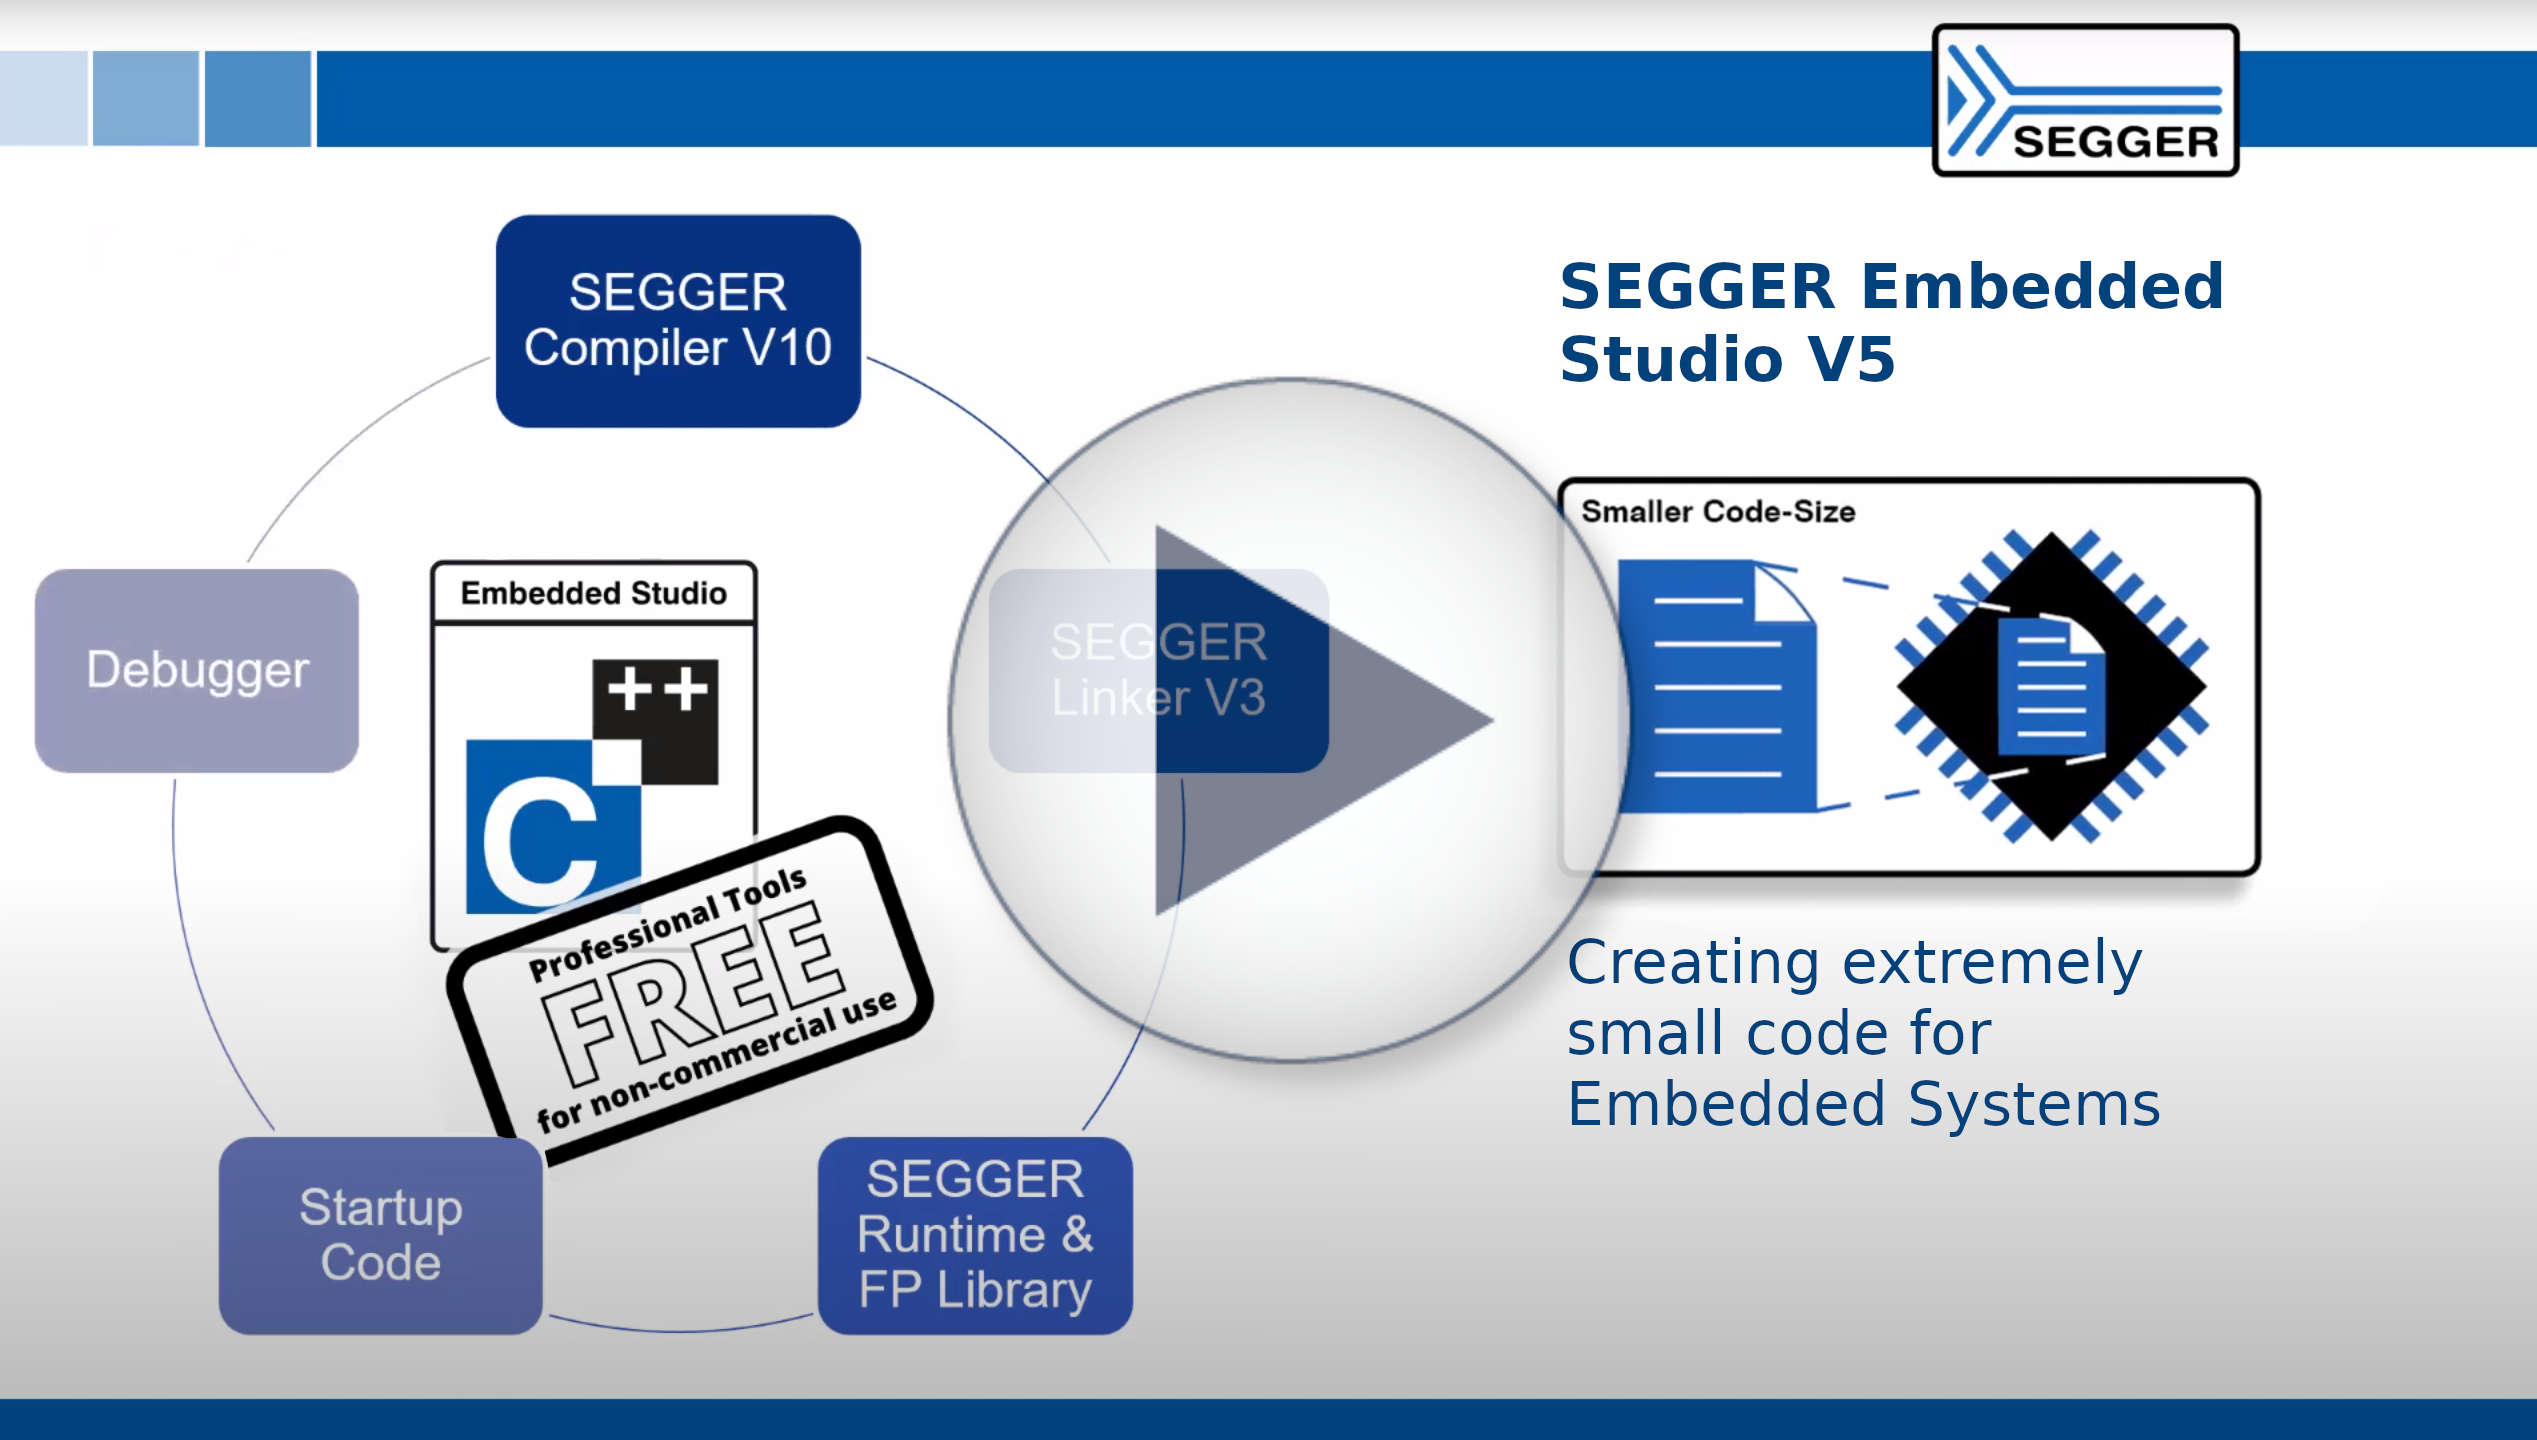 SEGGER Embedded Studio V5 